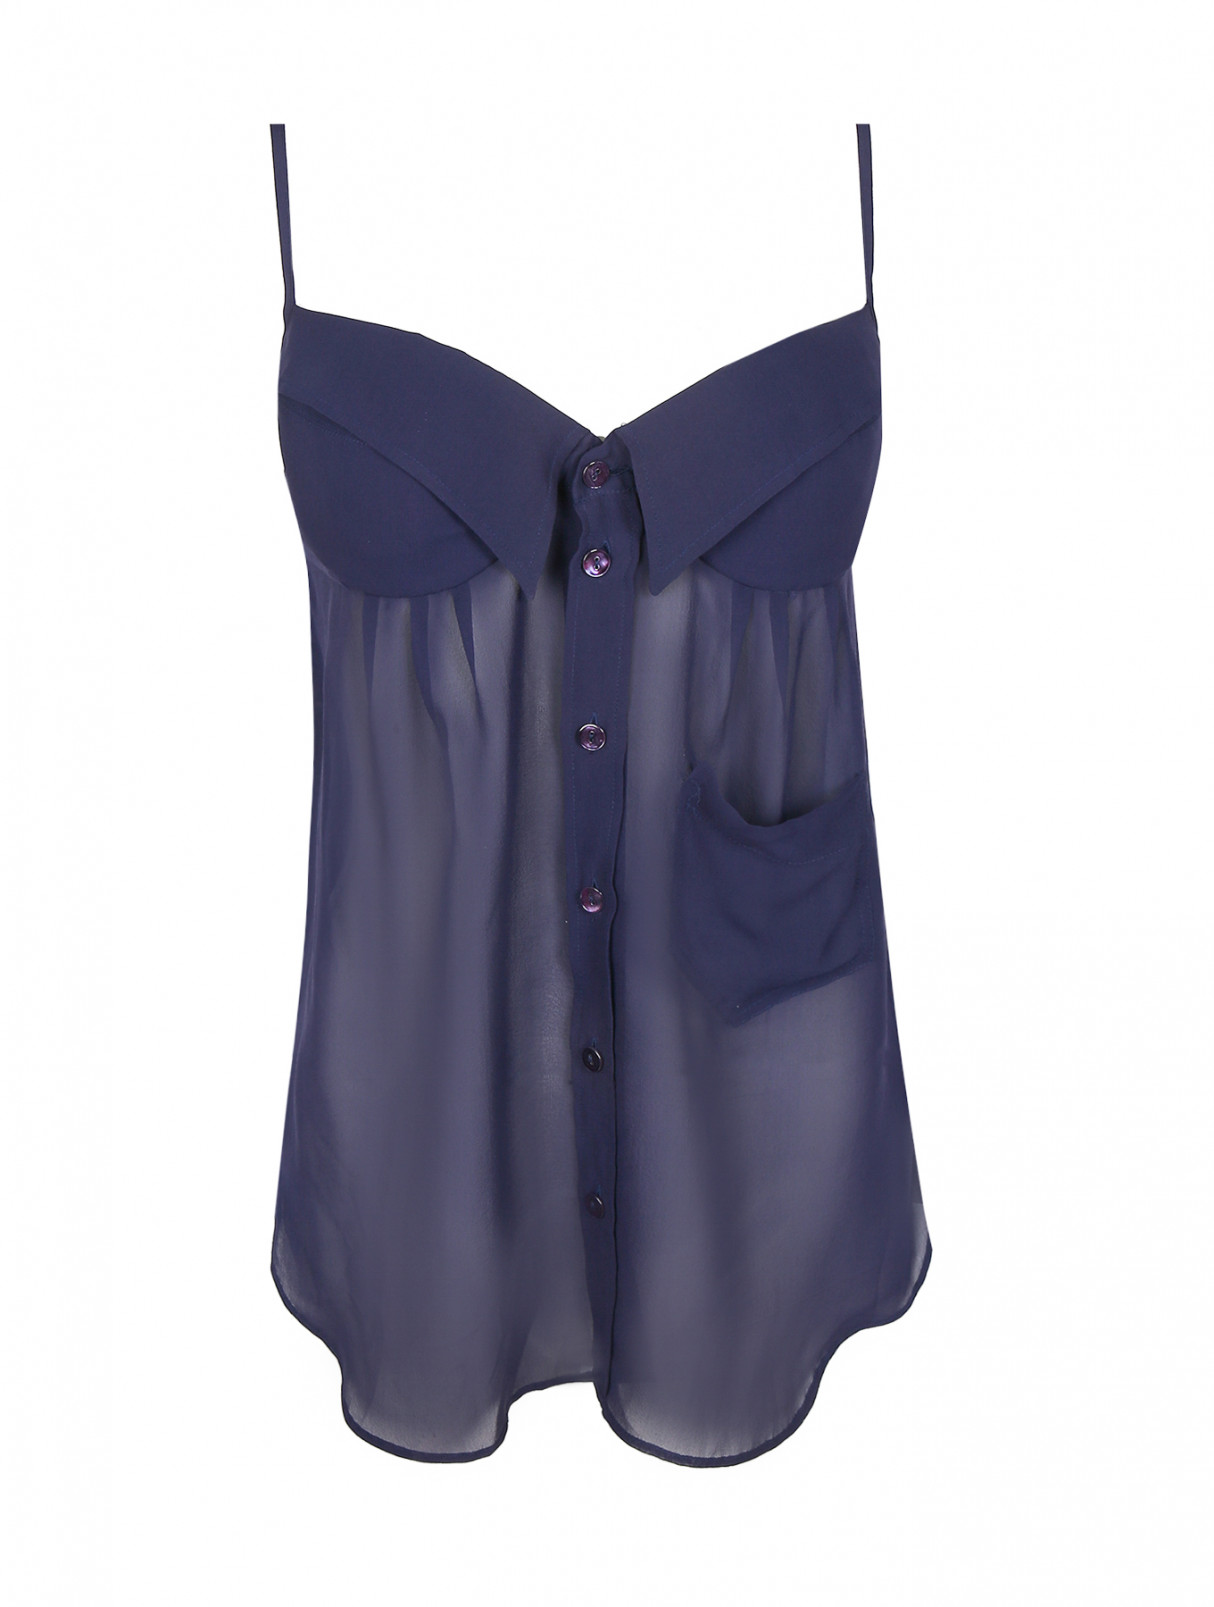 Топ из шелка с накладным карманом Jean Paul Gaultier  –  Общий вид  – Цвет:  Фиолетовый